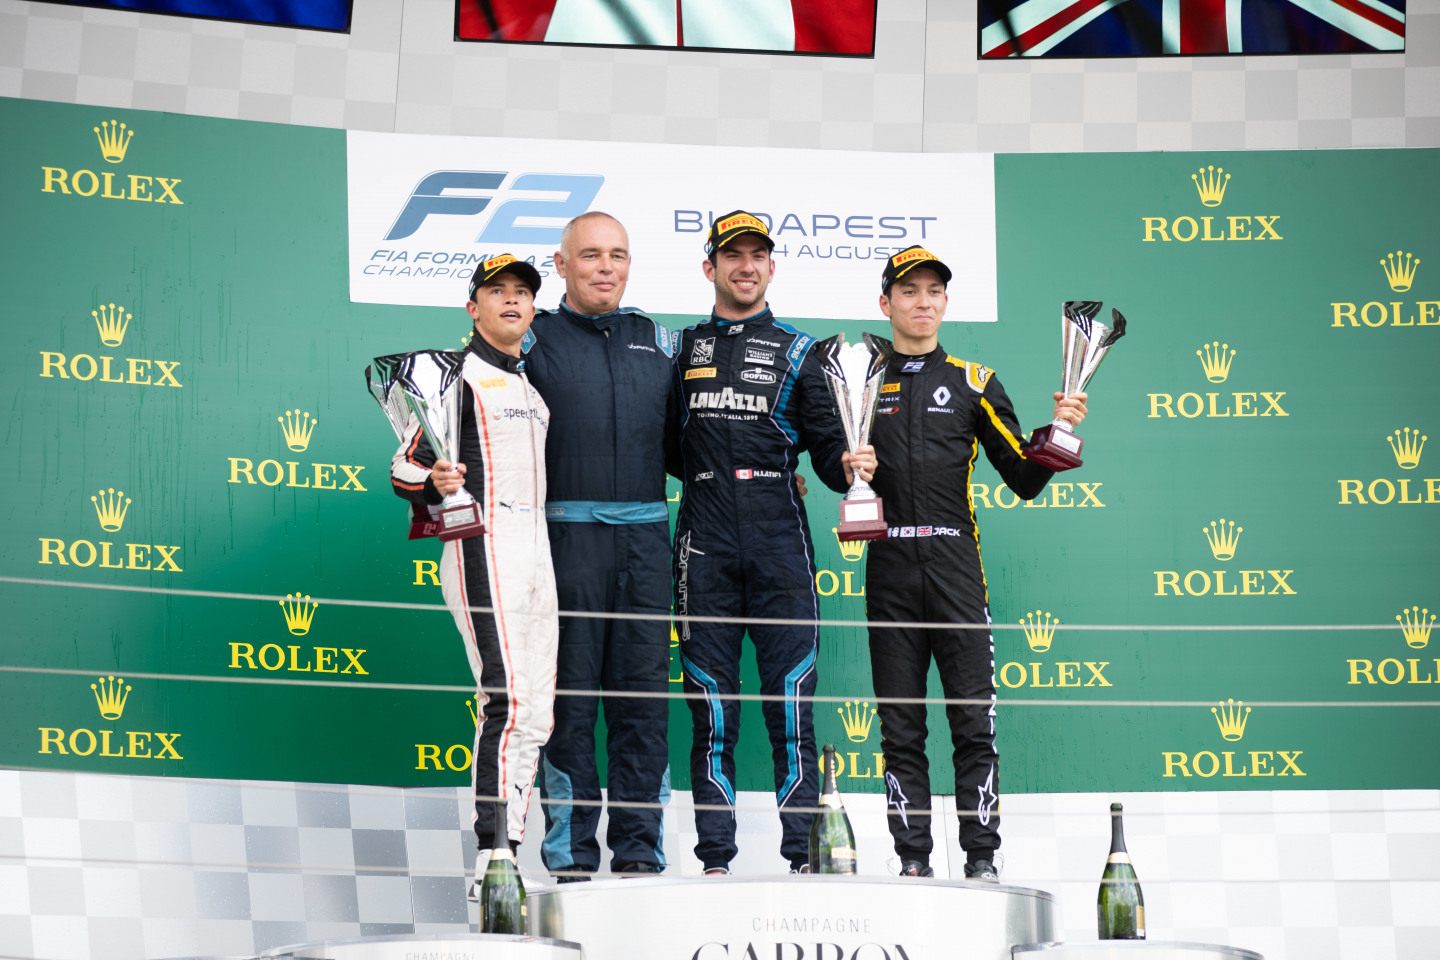 Де Врис, Латифи и Аиткен на подиуме в Венгрии © FIA F2 Championship